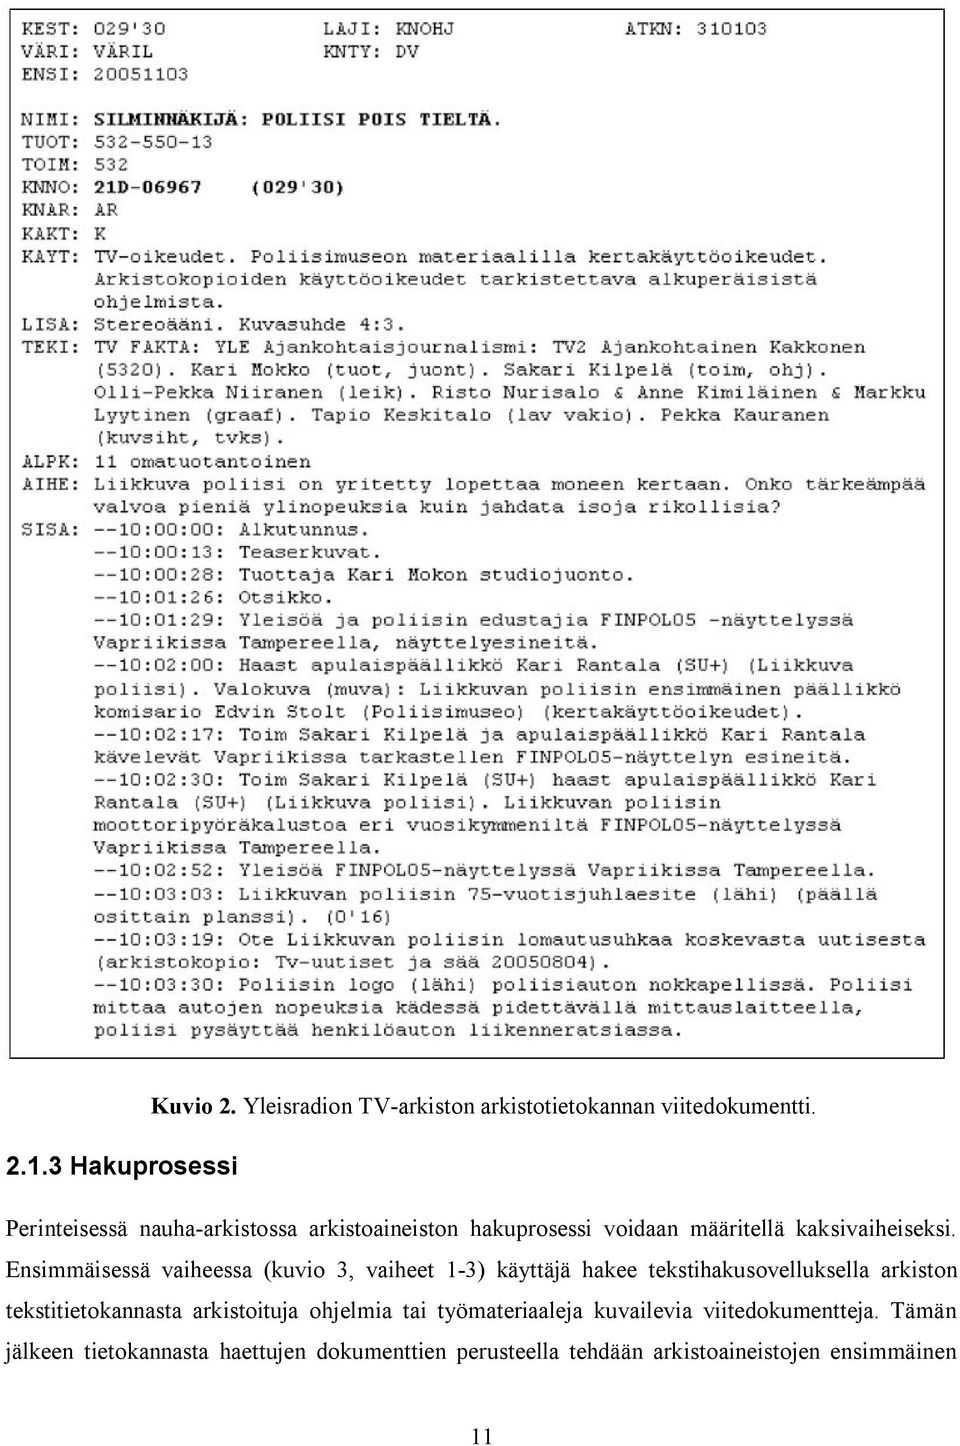 Ensimmäisessä vaiheessa (kuvio 3, vaiheet 1 3) käyttäjä hakee tekstihakusovelluksella arkiston tekstitietokannasta